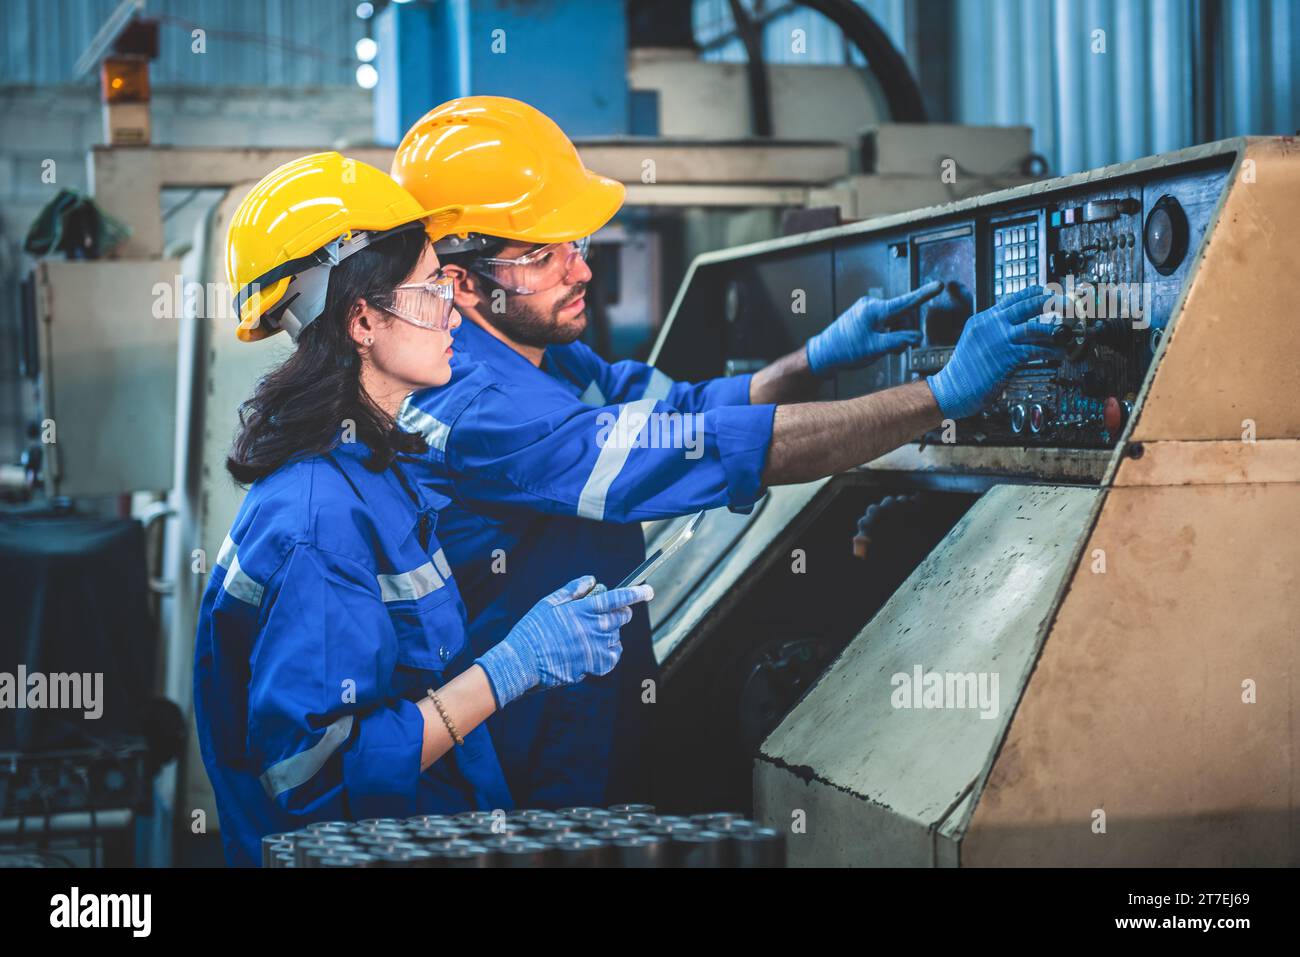 Porträt der Arbeiter in der Schwerindustrie, die an der Metallverarbeitung arbeiten, indem sie eine Drehmaschine an einer Maschine für die Stahlstrukturindustrie betreiben. Stockfoto